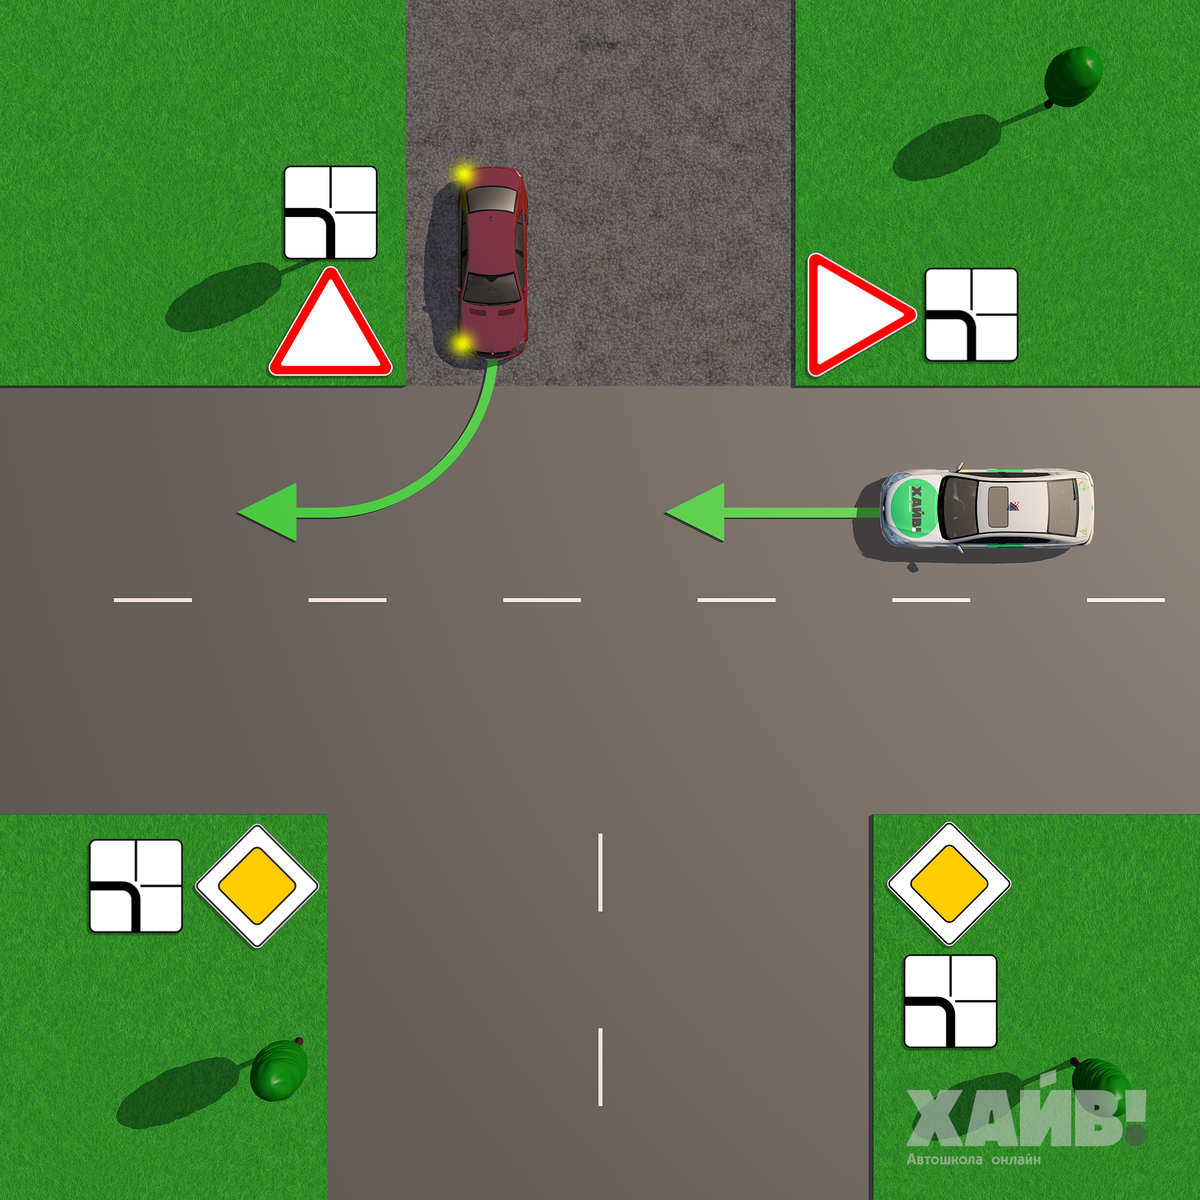 Зеленый автомобиль проедет перекресток. Задачи ПДД. Машина на перекрестке. Знак Уступи дорогу на перекрестке. Перекресток с грунтовой дорогой.